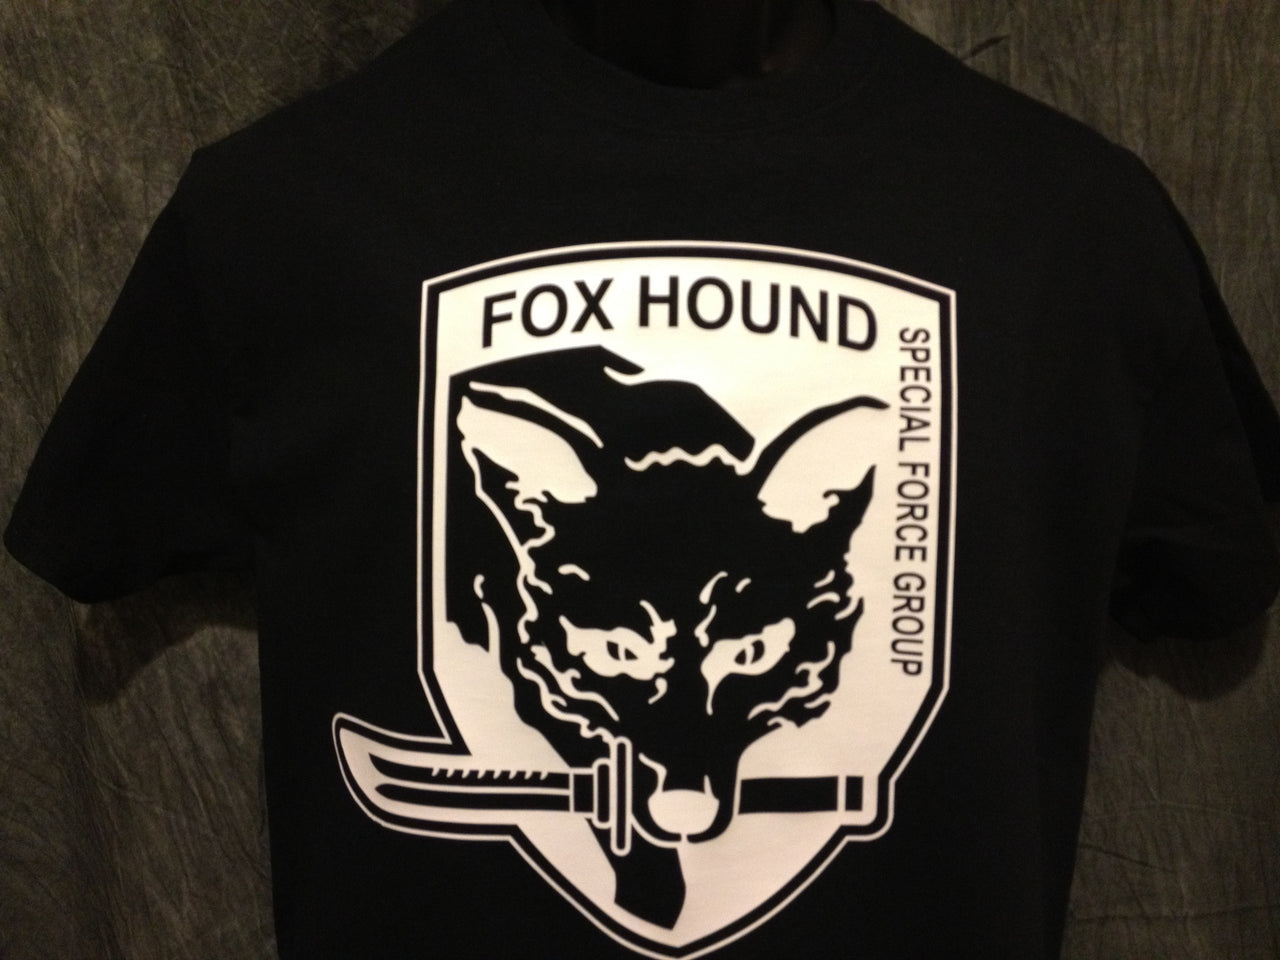 Metal Gear Solid Foxhound Tshirt: Black With White Print - TshirtNow.net - 4